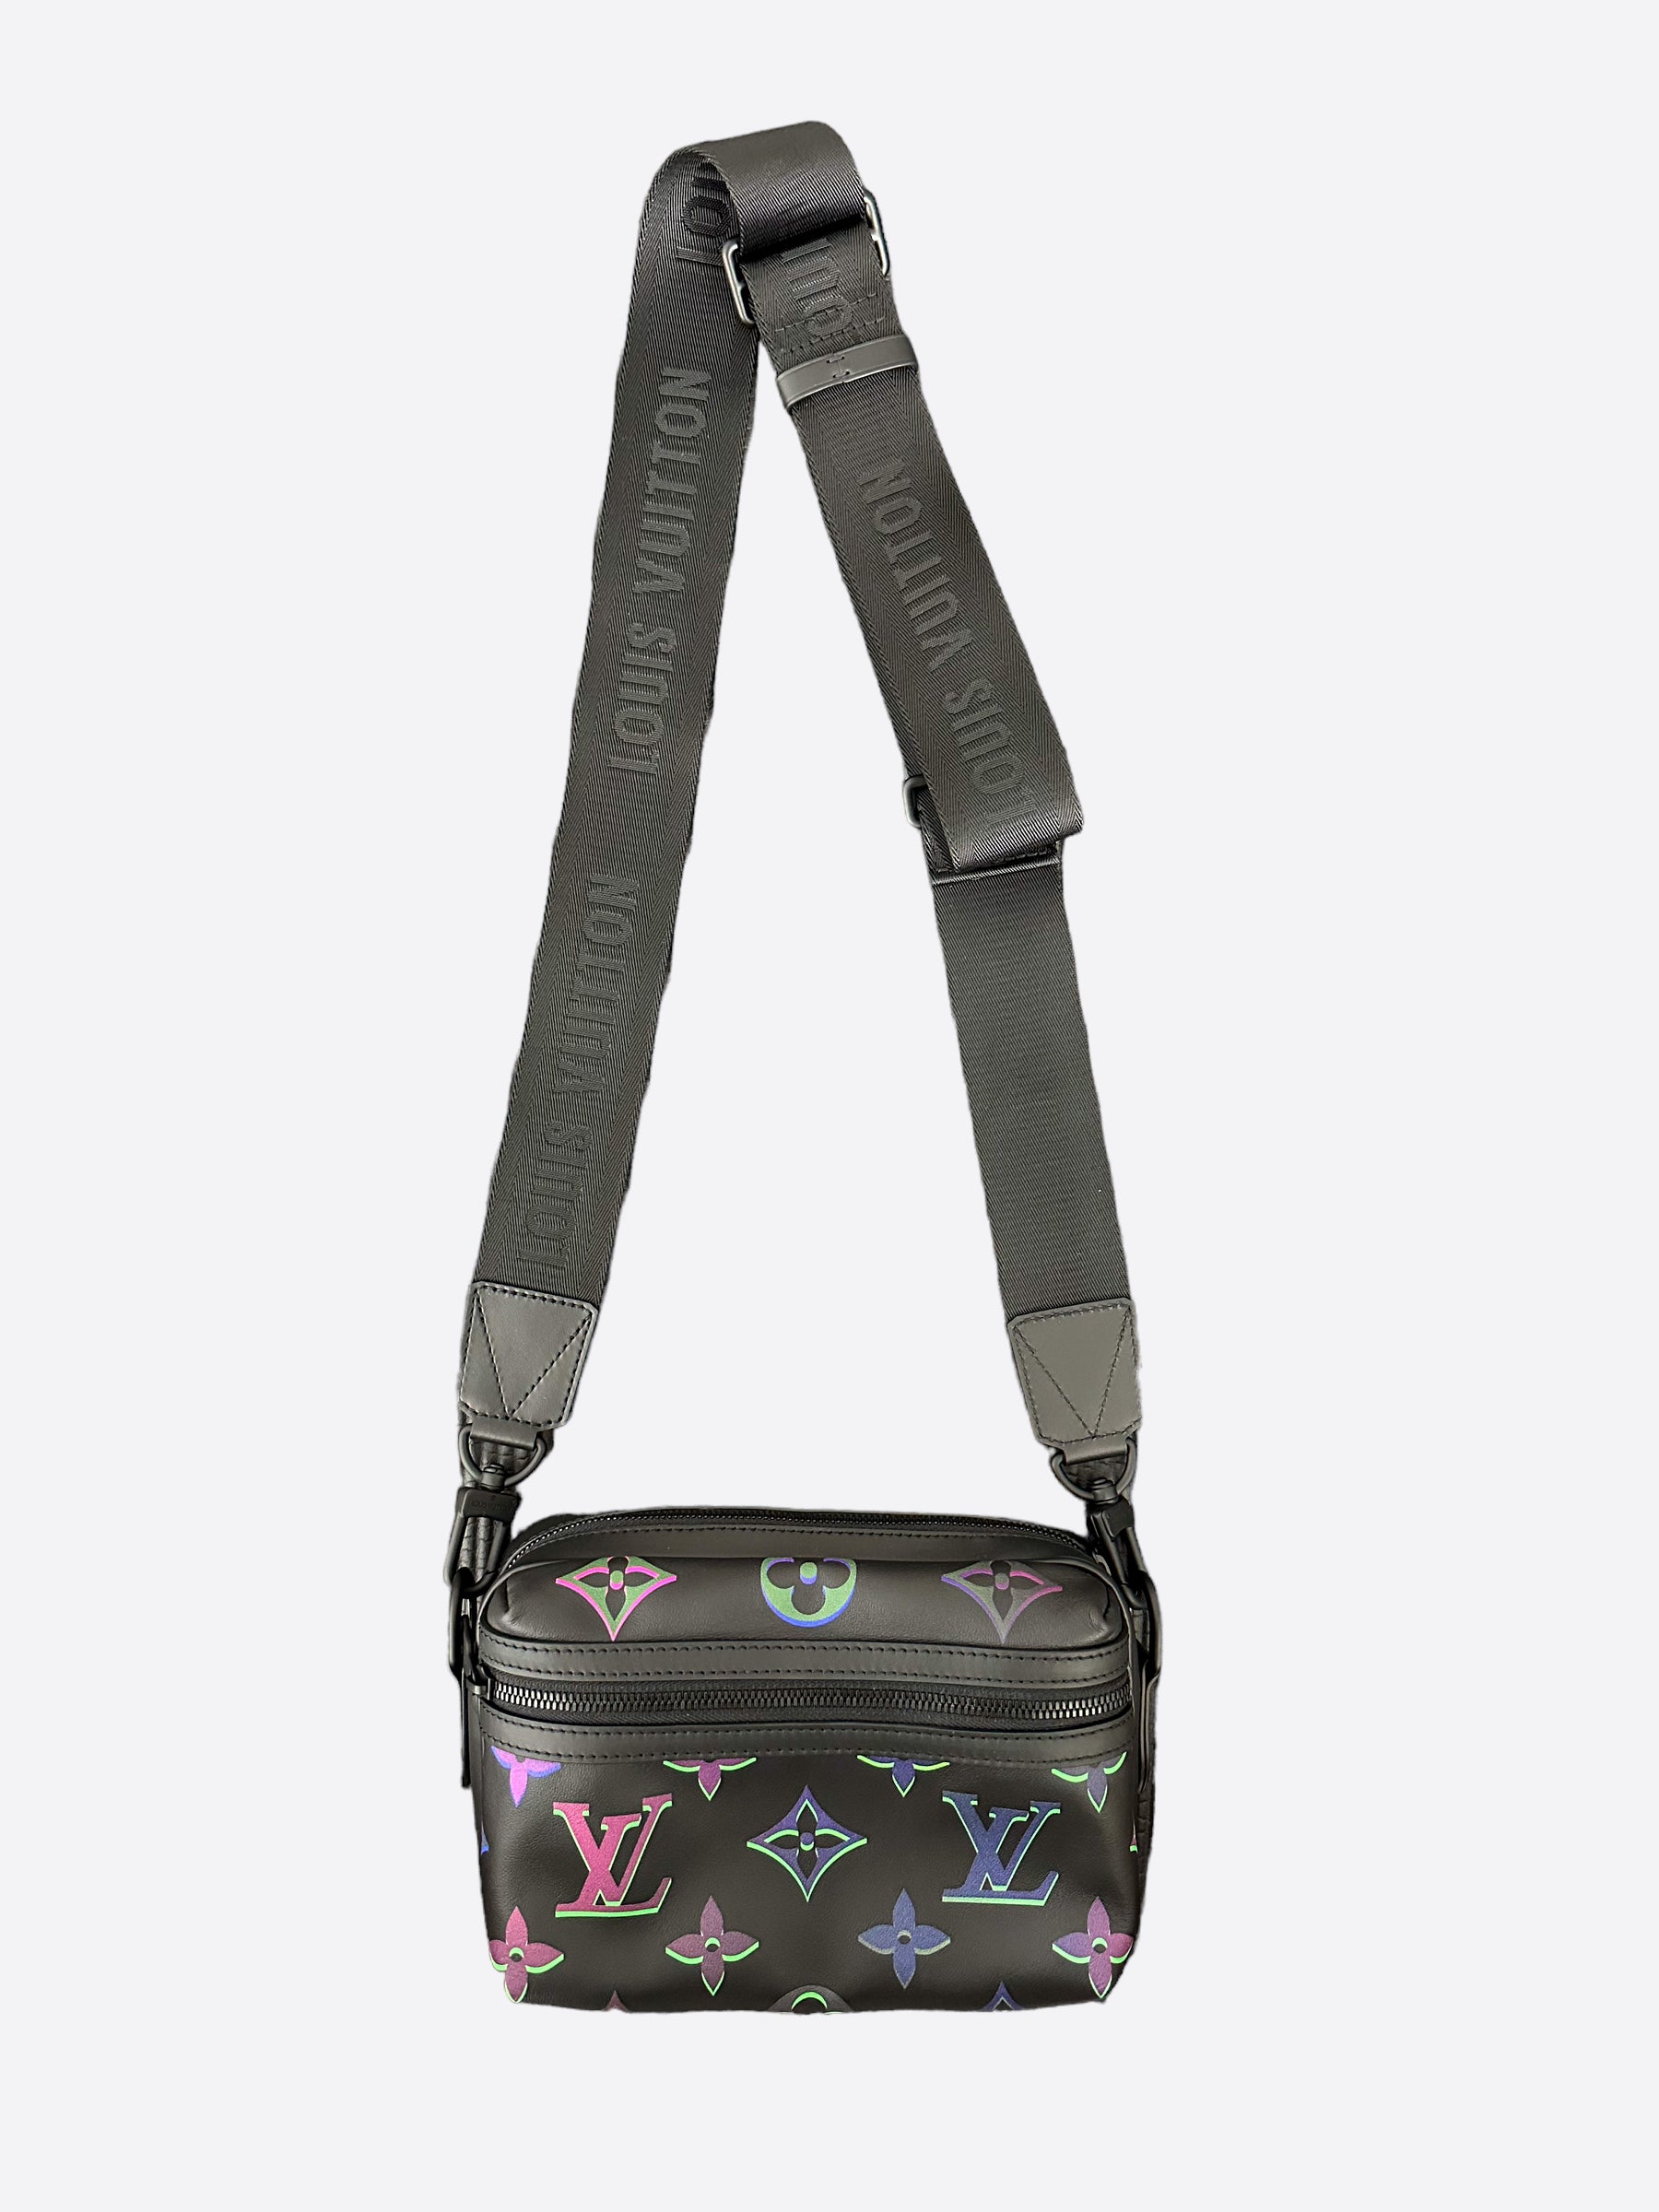 Louis Vuitton Expandable Messenger Bag(Black)